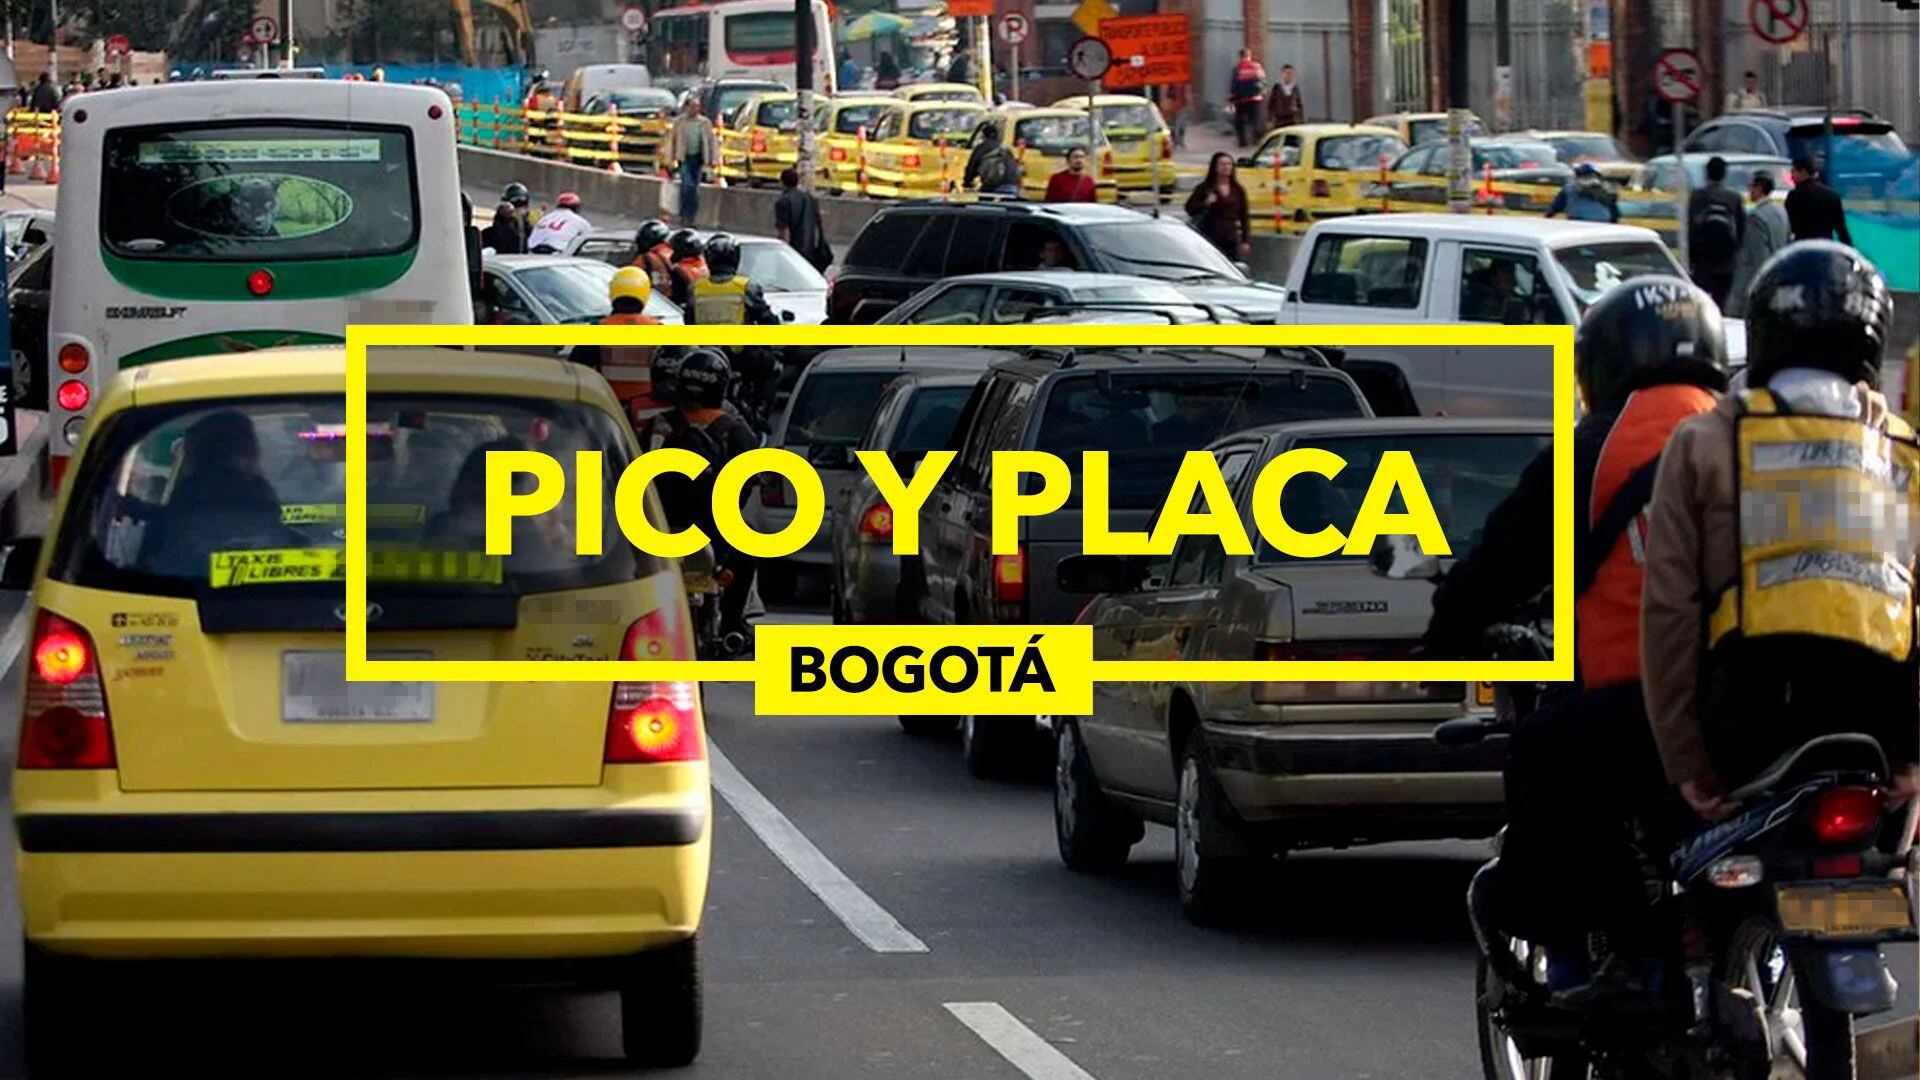 El Pico y Placa lleva más de 20 años activo en la capital del país (Infobae/Jovani Pérez)